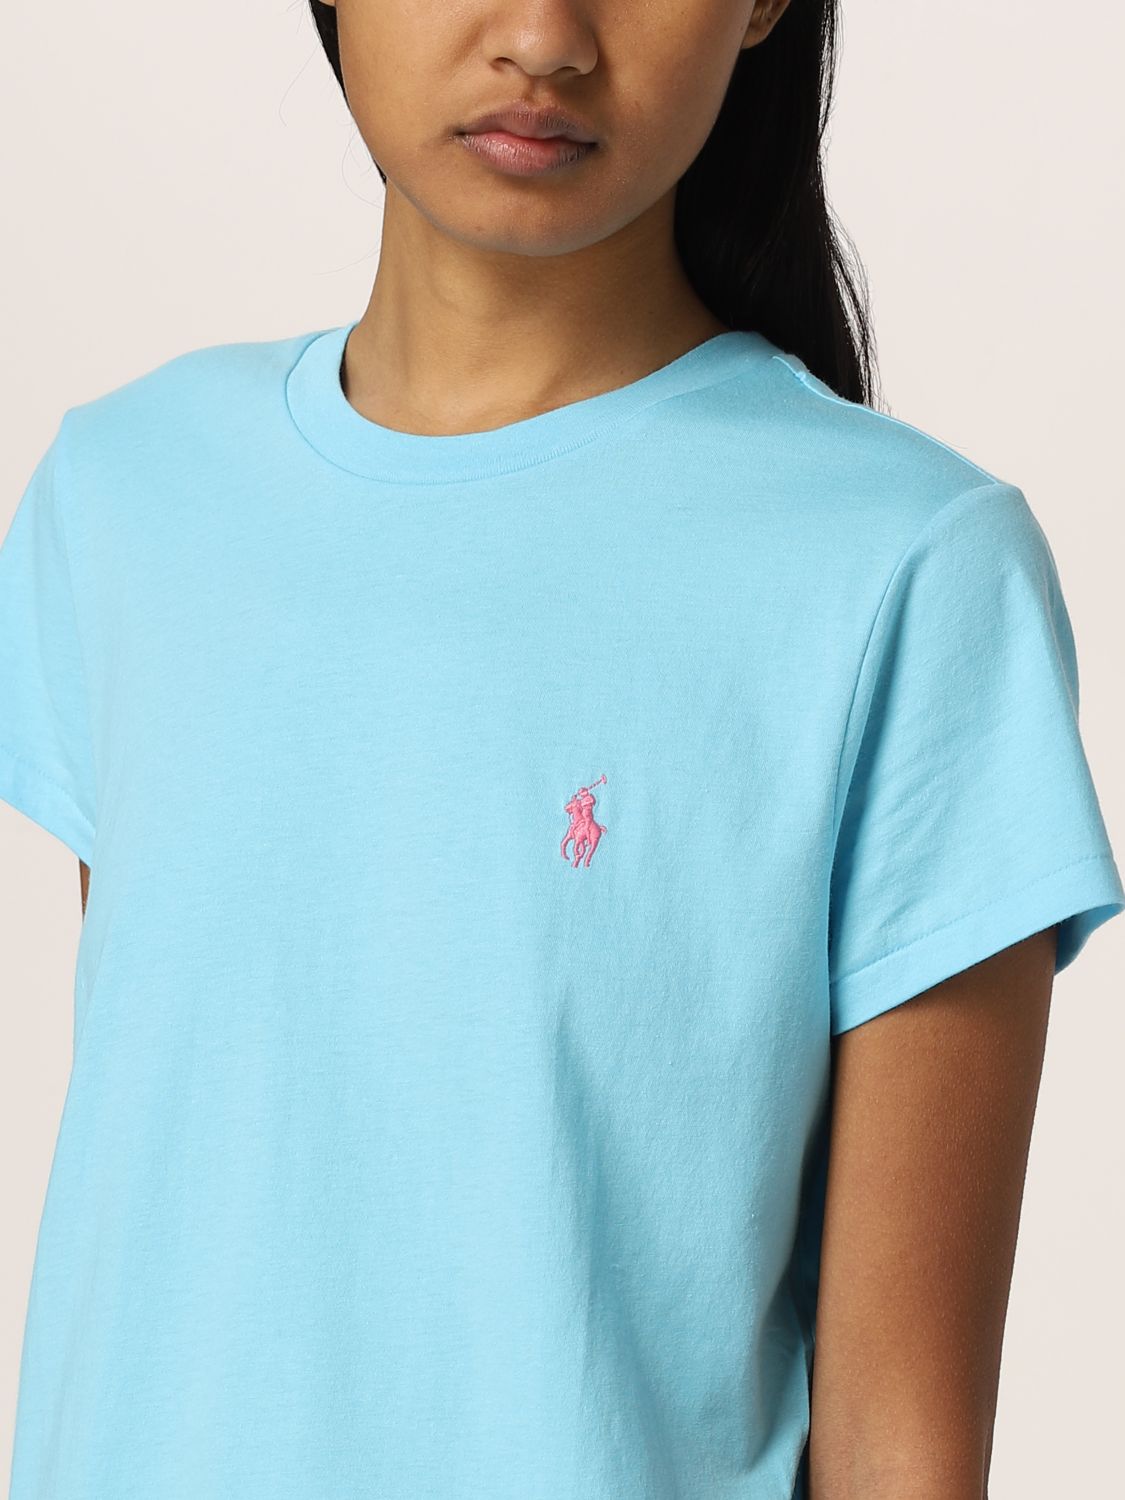 T-shirt Polo Ralph Lauren: T-shirt Polo Ralph Lauren in cotone con logo turchese 3